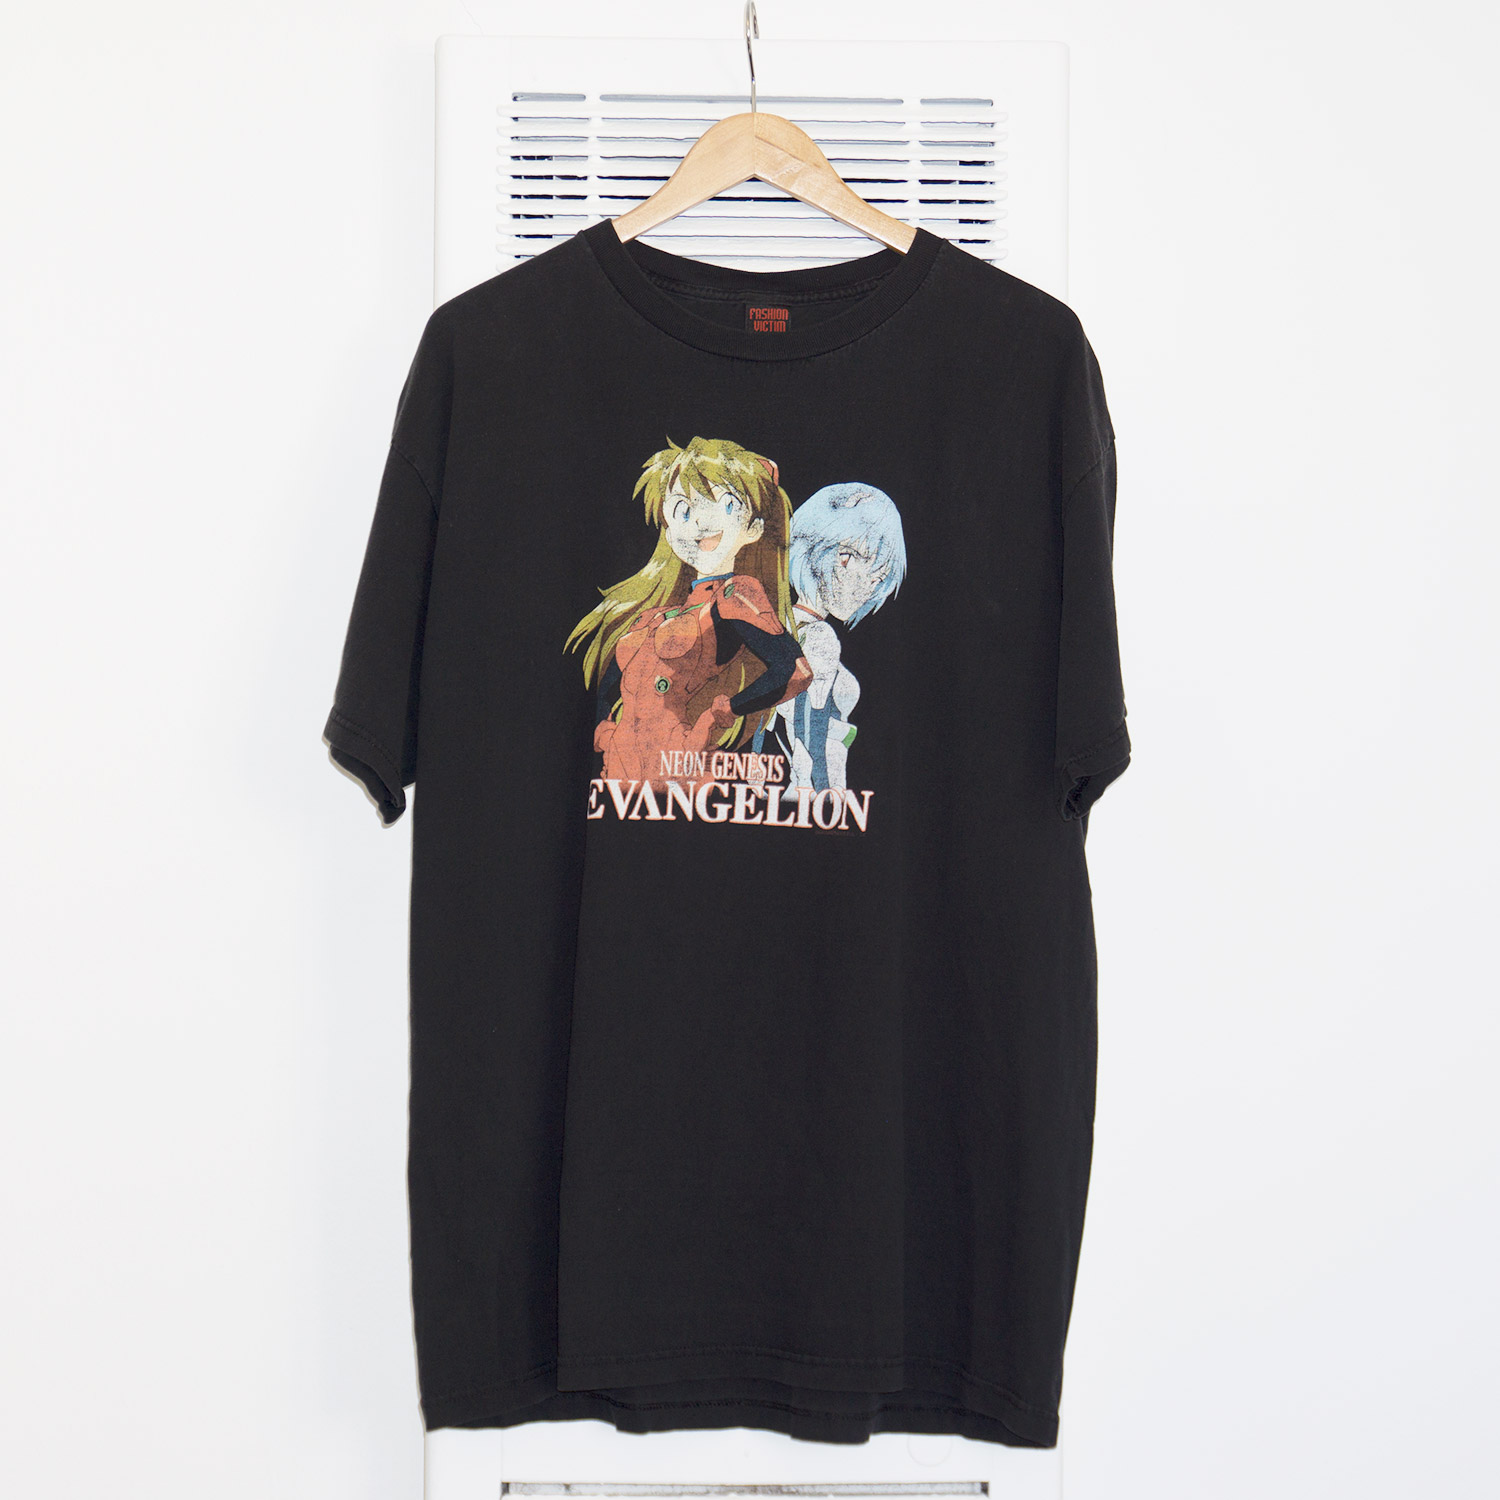 Vintage Neon Genesis Evangelion T-shirt, Size XL | Black Shirts World